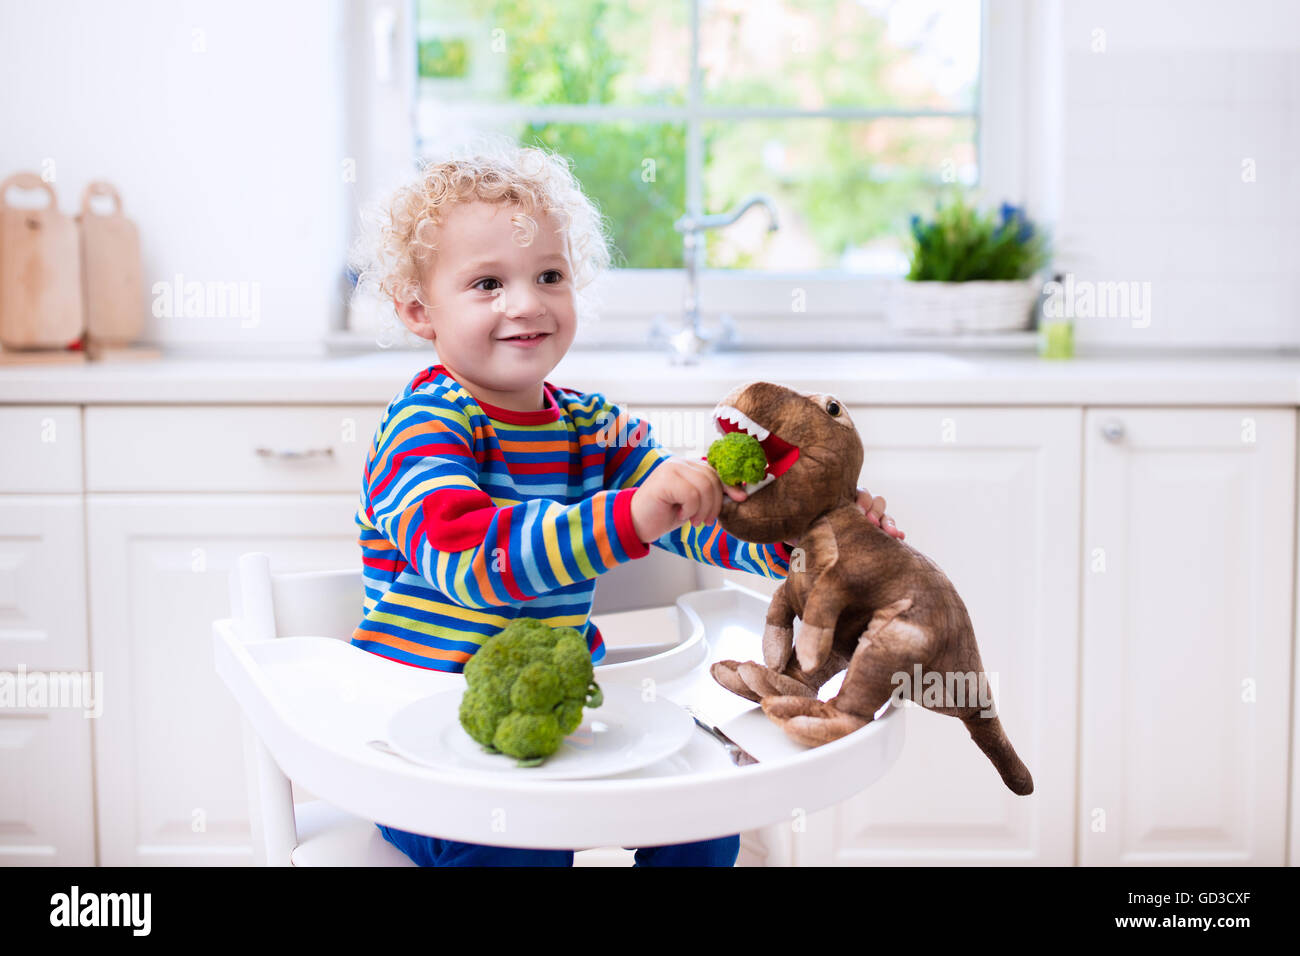 Glückliche kleine Junge im Hochstuhl Brokkoli essen und füttern sein Spielzeug Dinosaurier in einer weißen Küche. Stockfoto